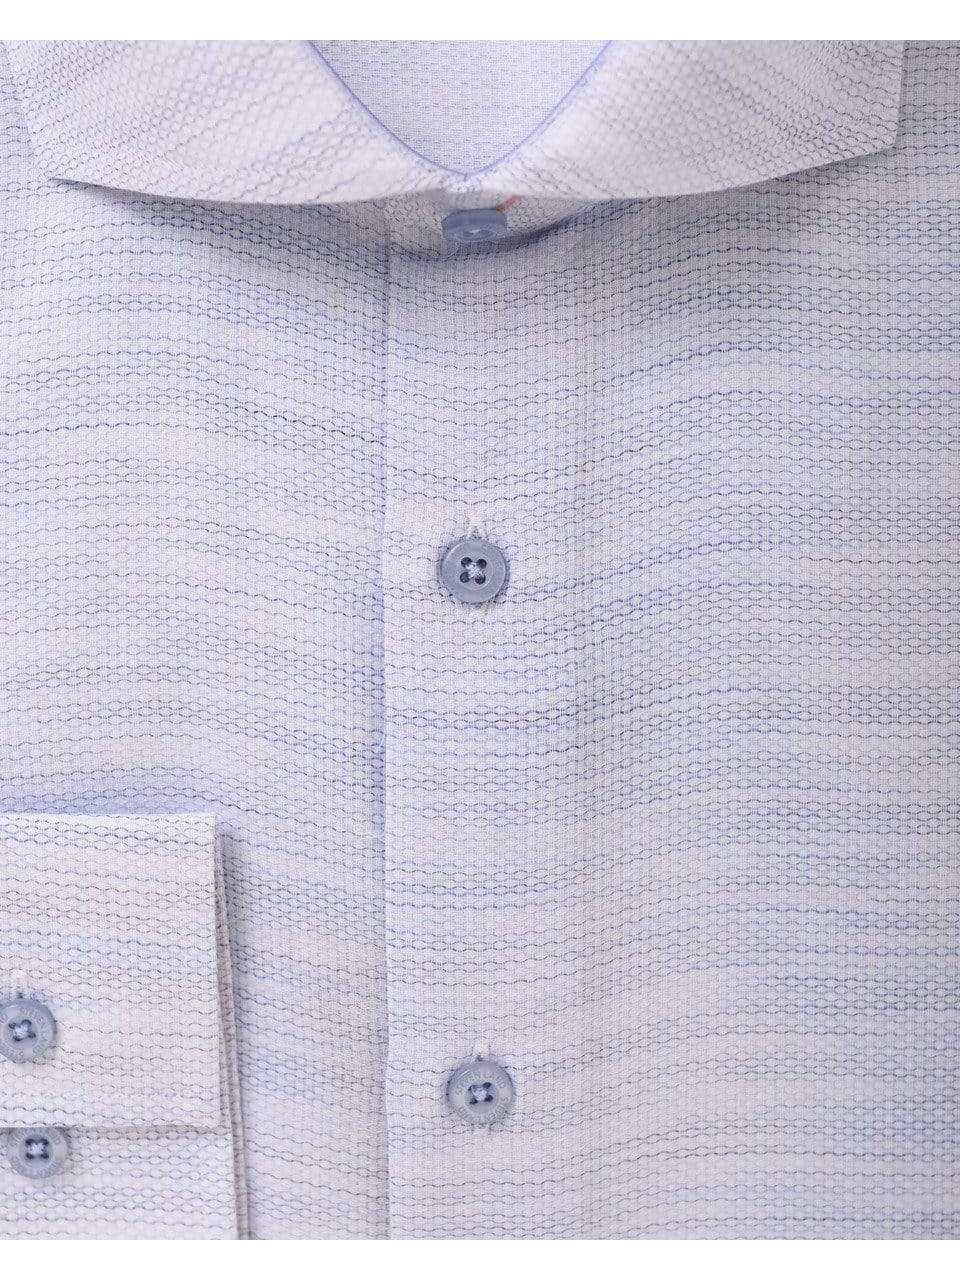 Steven Land Mens Regular Fit Blue Textured 100% Cotton Dress Shirt - The Suit Depot